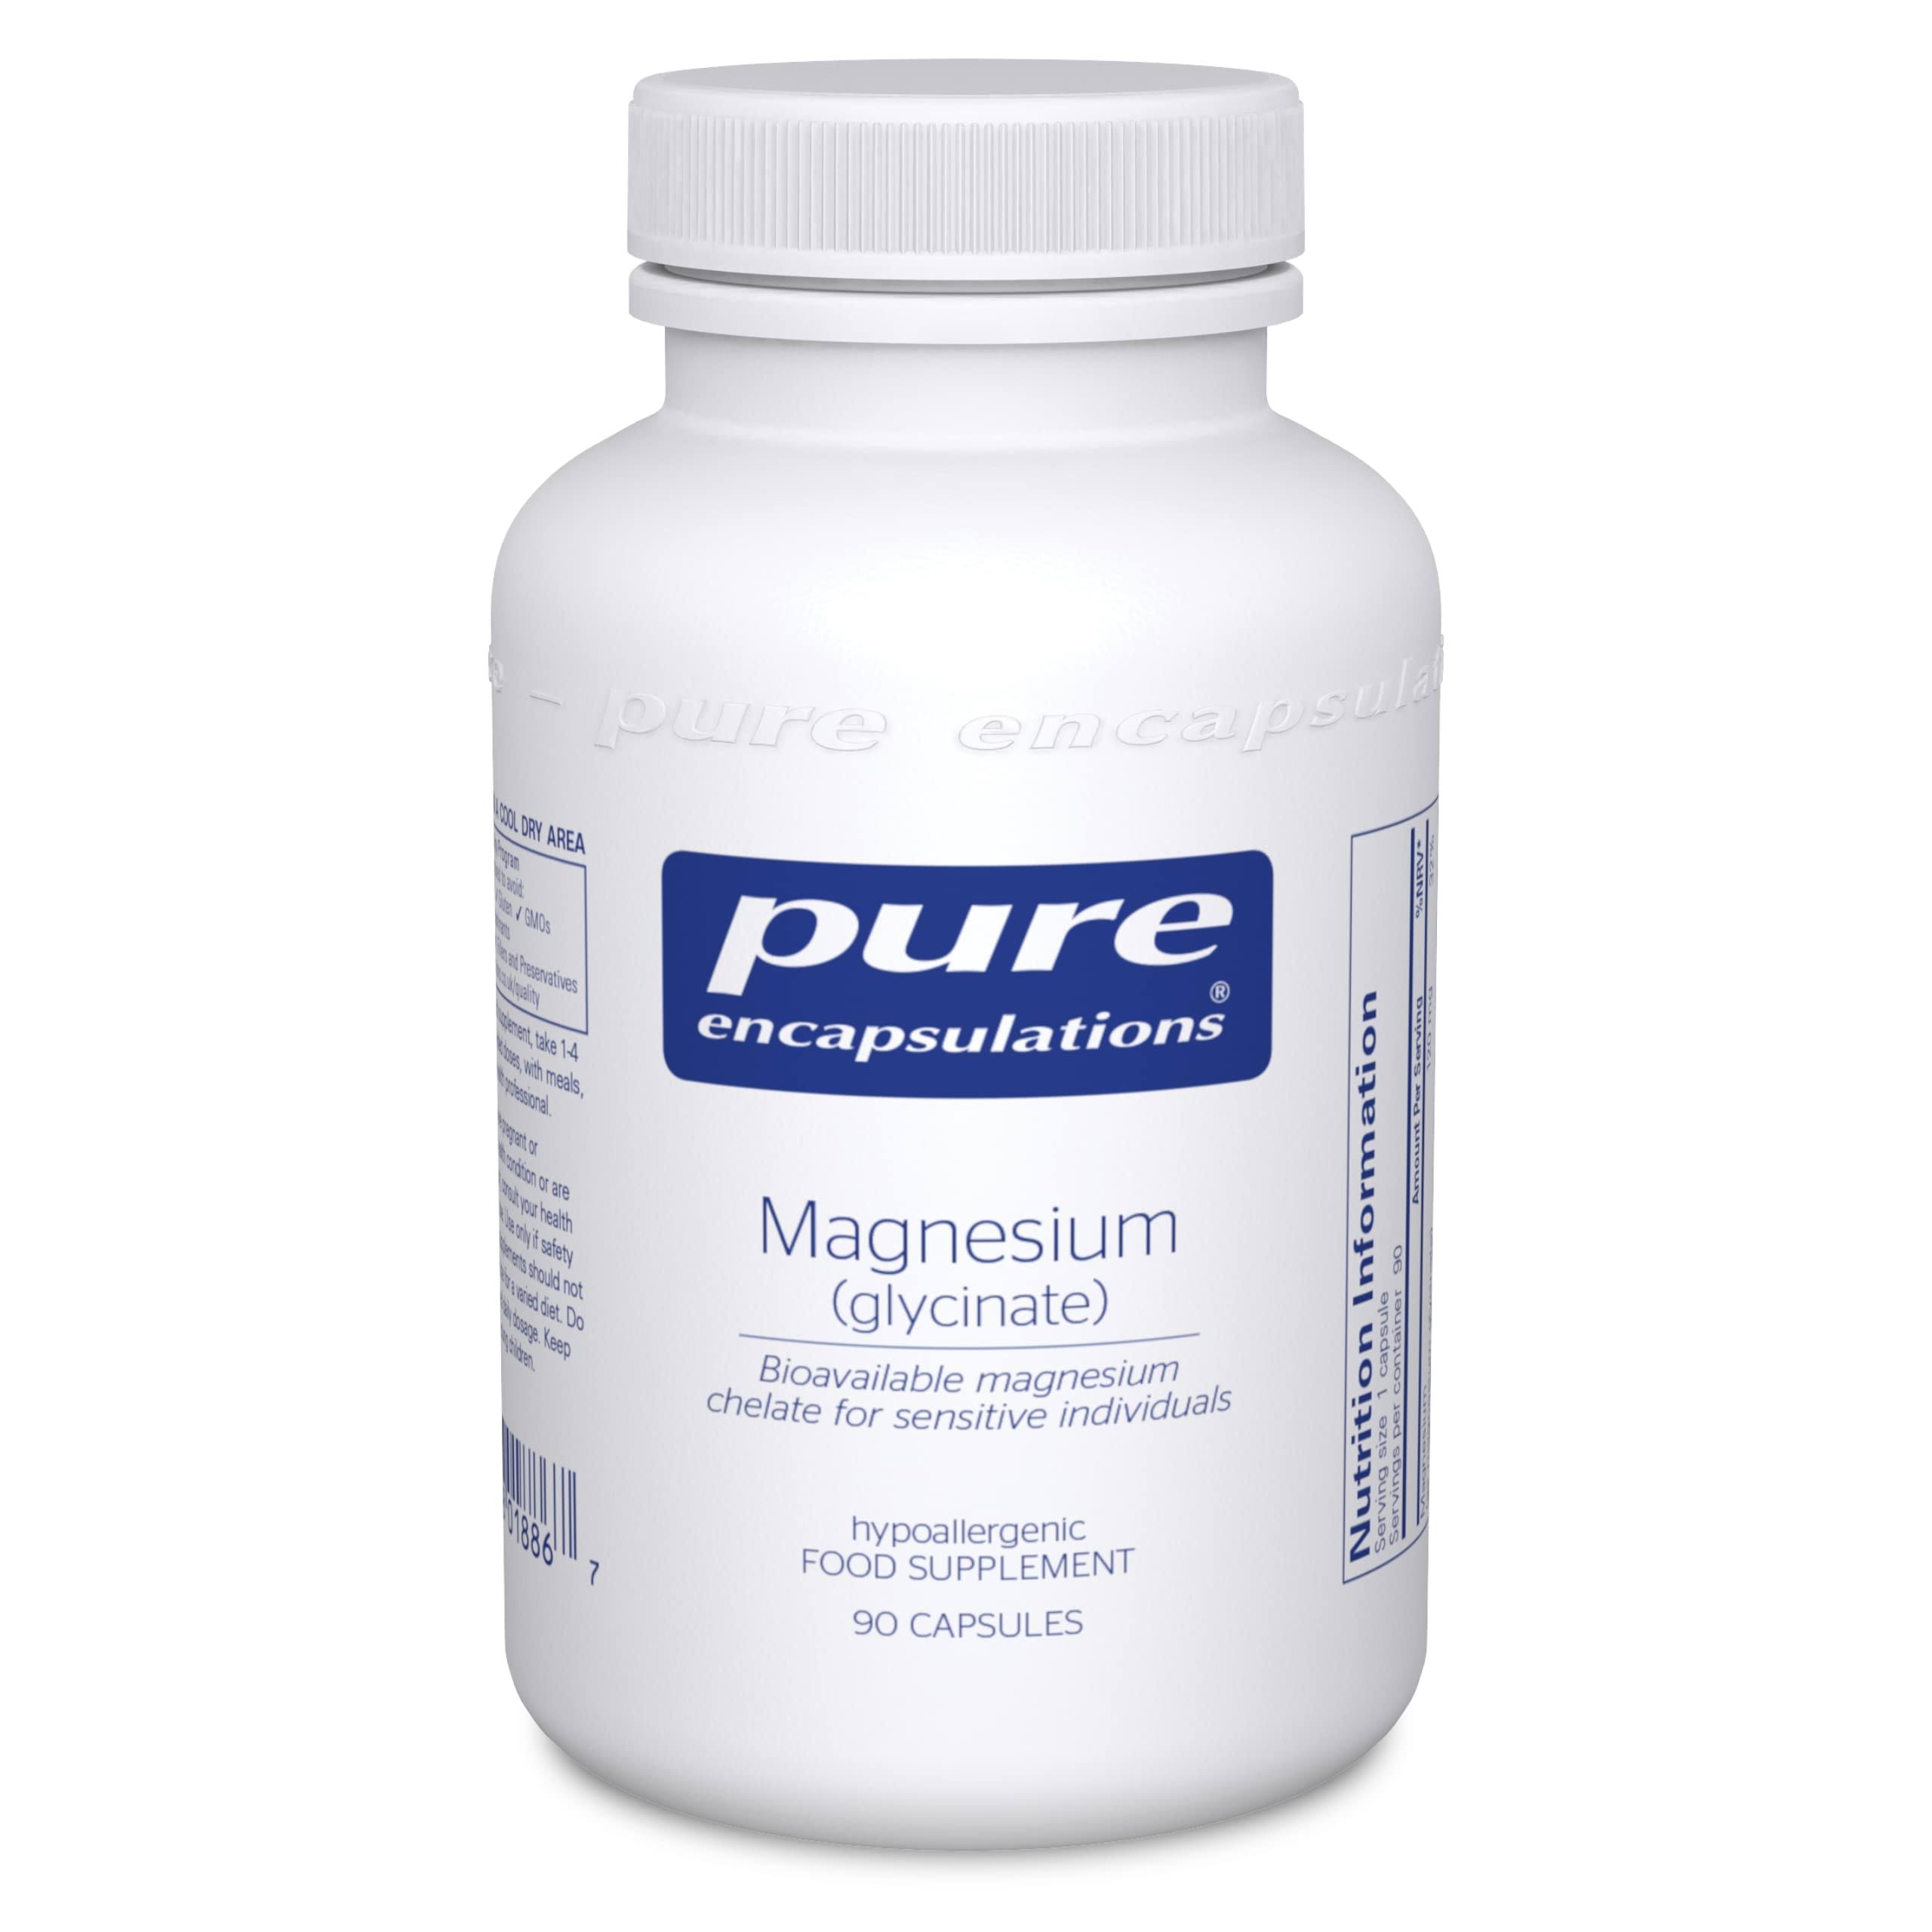 Pure Encapsulations Magnesium Glycinate, 90 Capsules